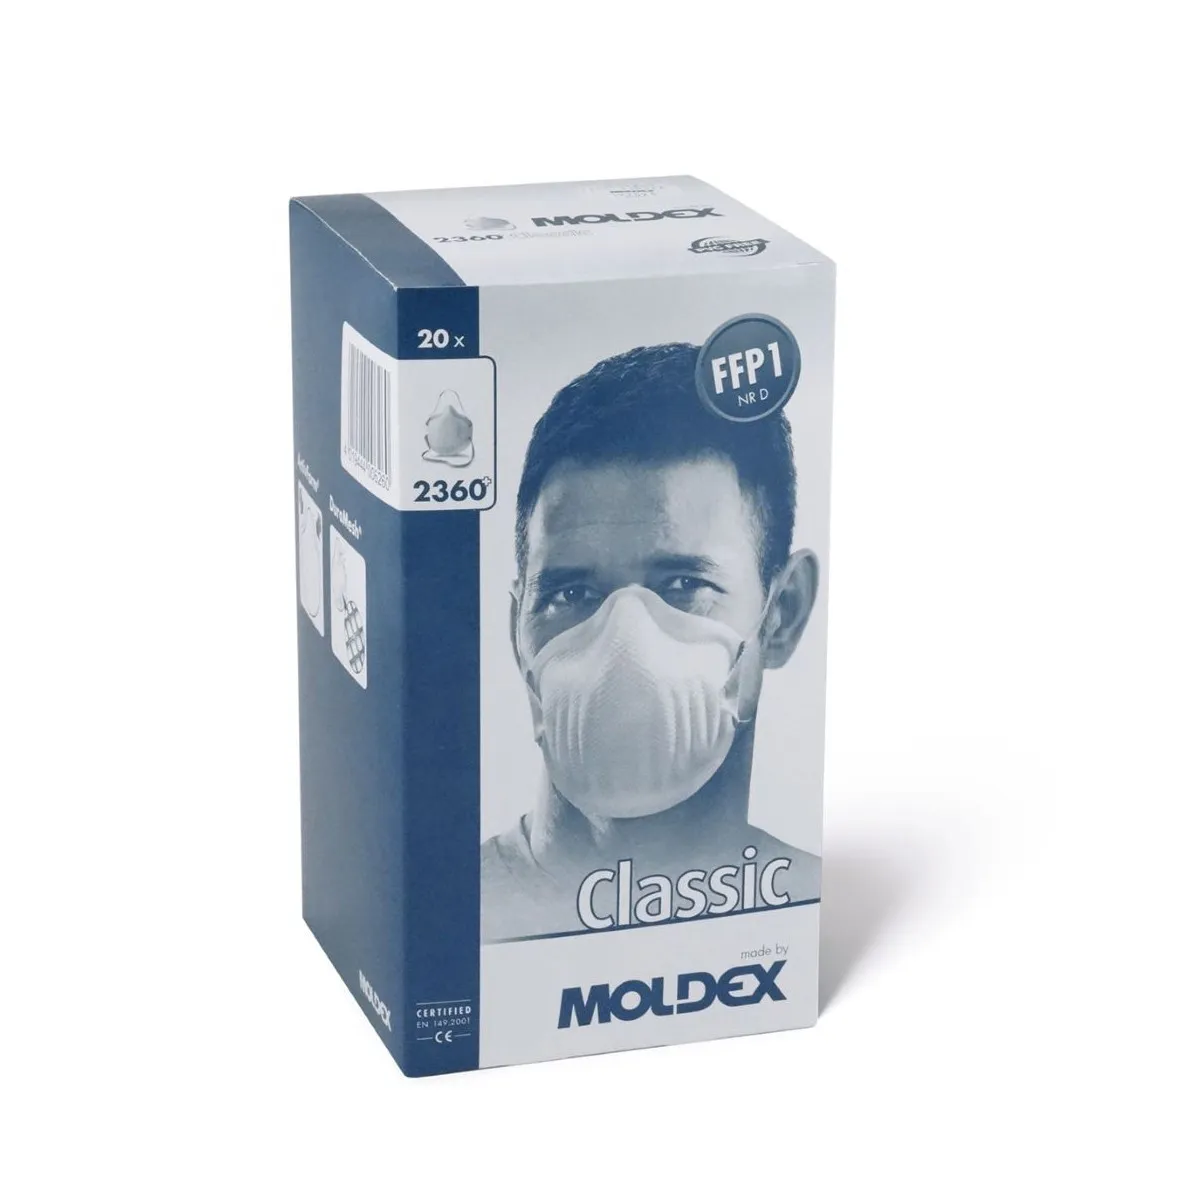 Jednokratna maska FFP1 2360 - Moldex 